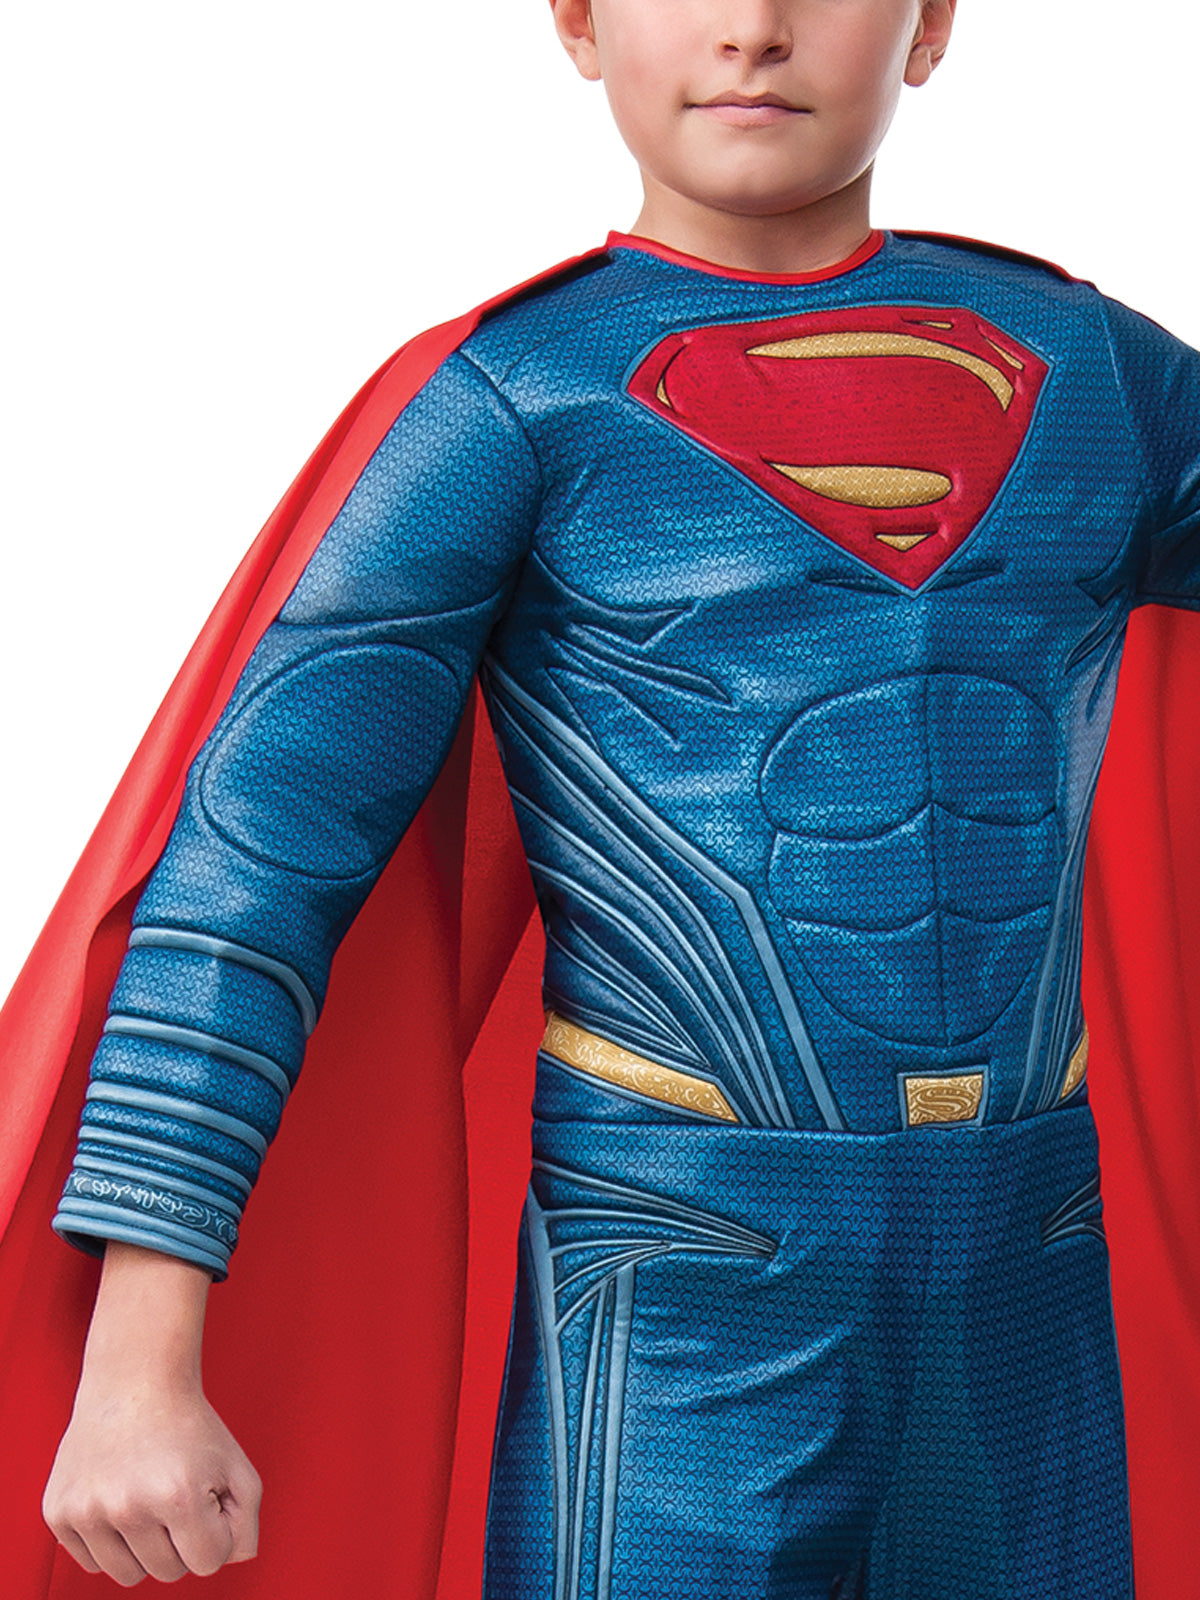 Superman Child Boys Premium Costume DC LIcensed